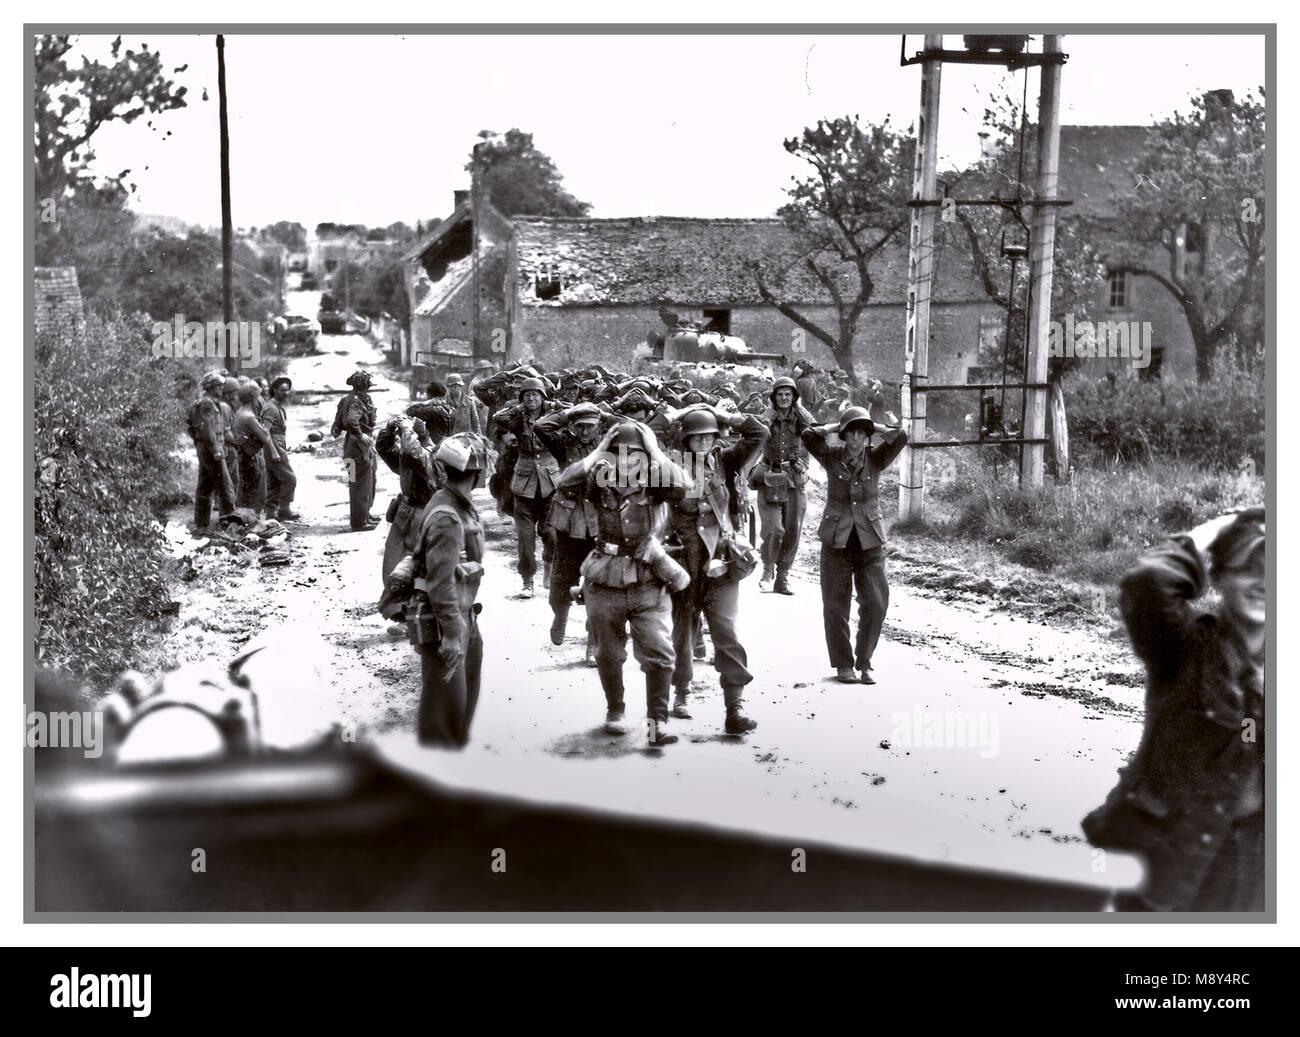 1944 Normandie France Troupes allemandes Surrender l'image historique de Wehrmacht et Waffen SS des troupes allemandes de la seconde Guerre mondiale des forces militaires allemandes se rendant à la tête, à Saint-Lambert-sur-Dive Normandie France le 21 août 1944 Banque D'Images